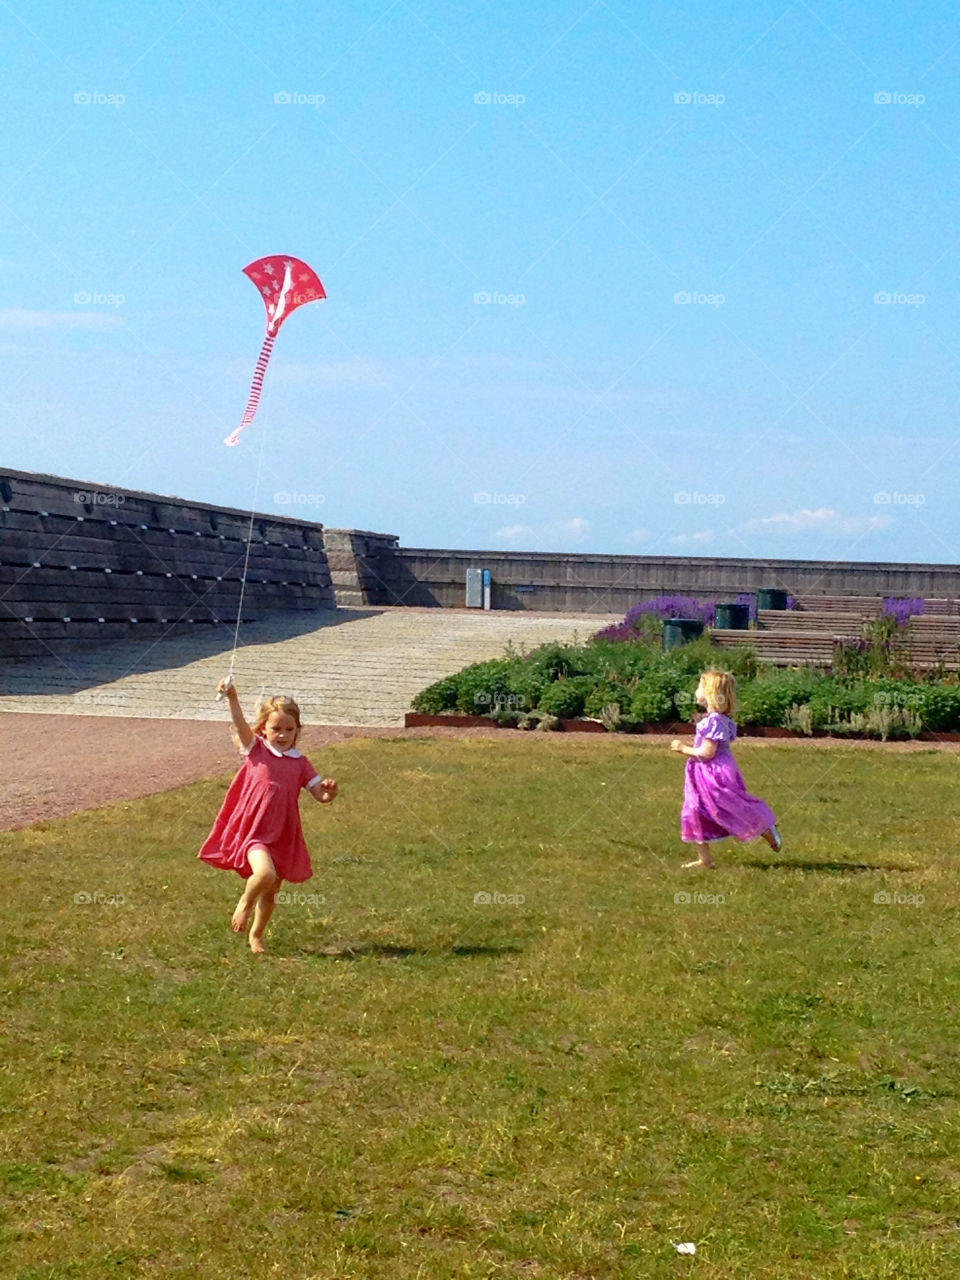 people summer play kite by knattja